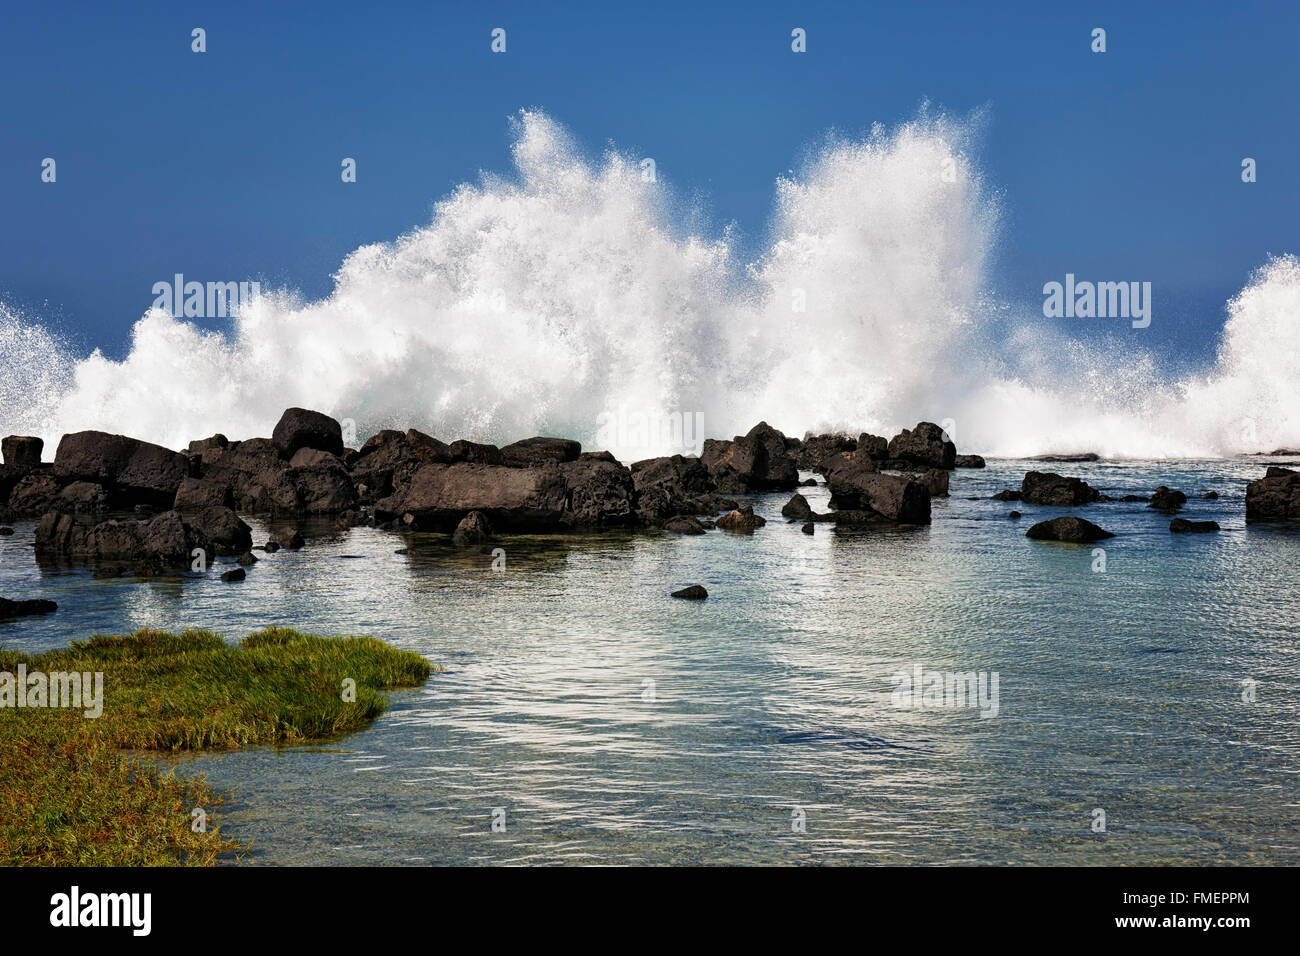 Las olas chocan contra la orilla y lava inundan las pozas de marea en Wawaloli Beach en la Isla Grande de Hawai. Foto de stock